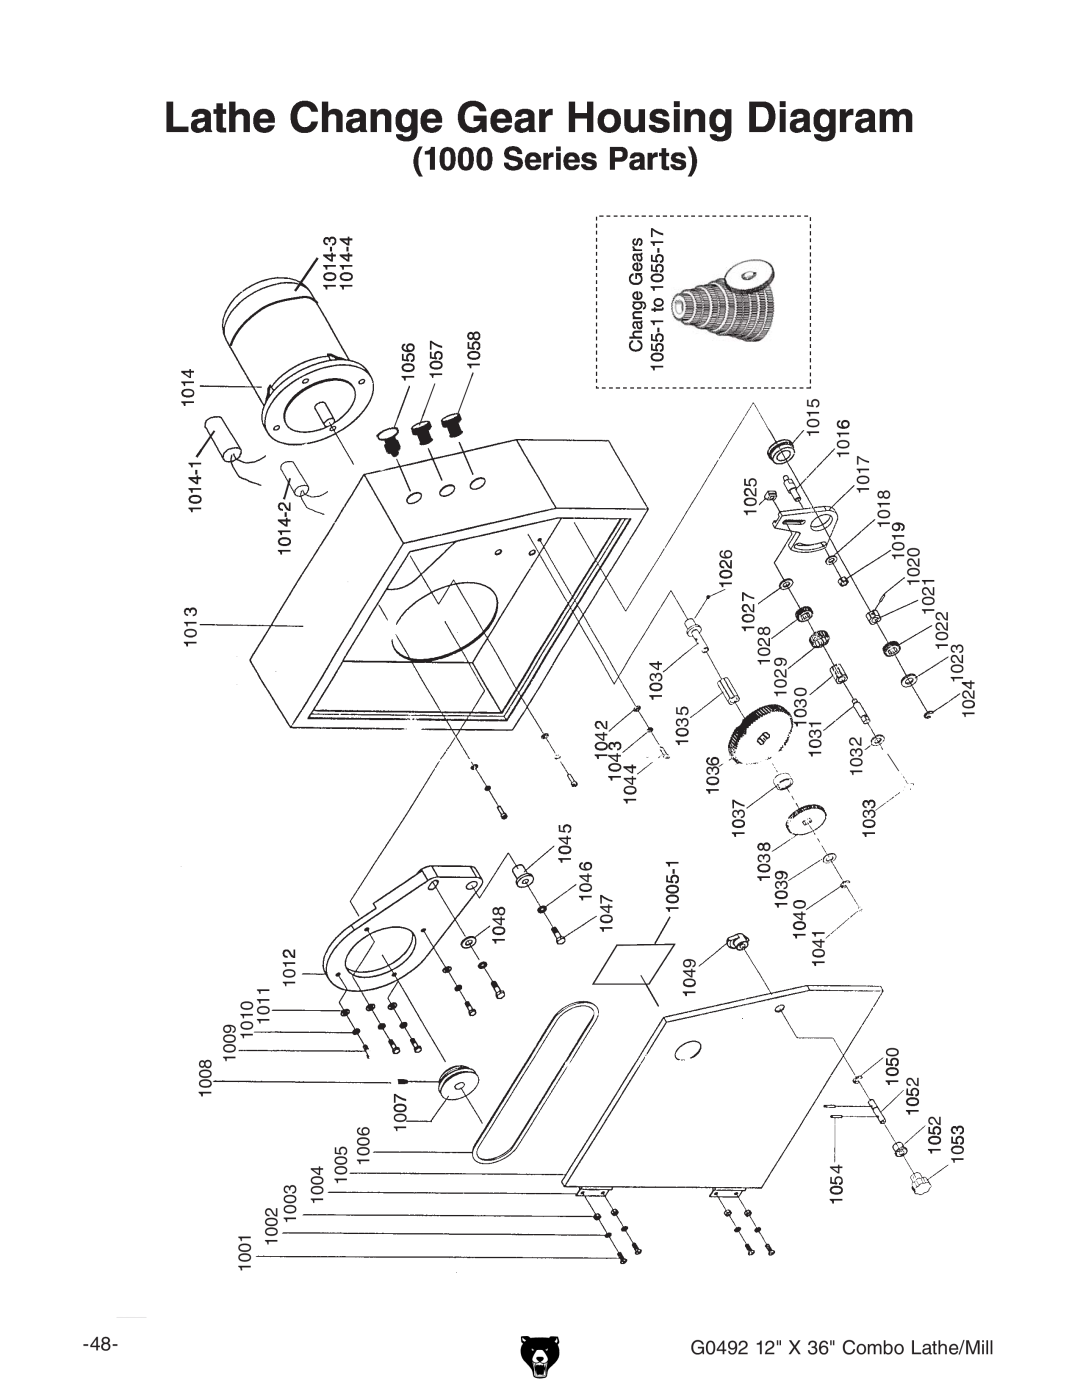 Grizzly G0492 manual Lathe Change Gear Housing Diagram 1000 Series Parts, &M+8dbWdAViZ$Baa 